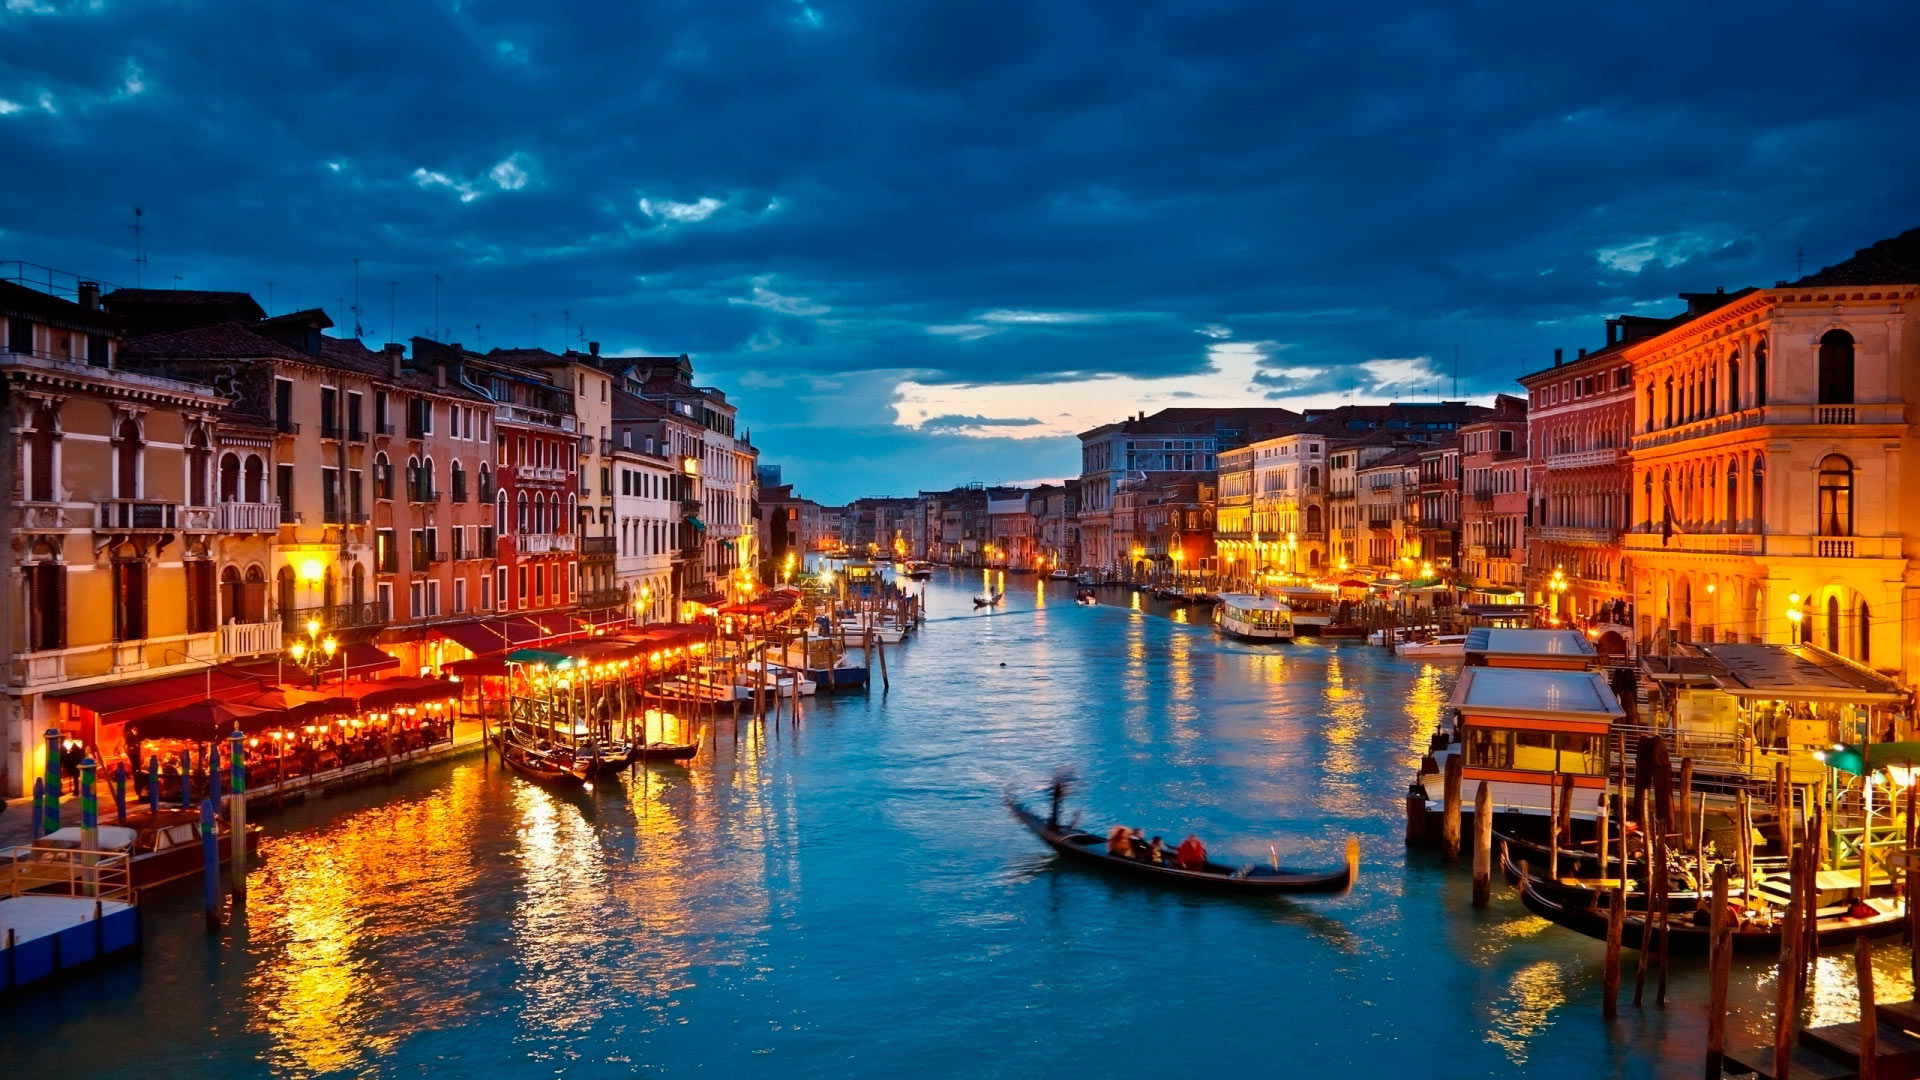 طرق مفيدة تجعل من رحلتك إلى إيطاليا أكثر روعة وتميزا 